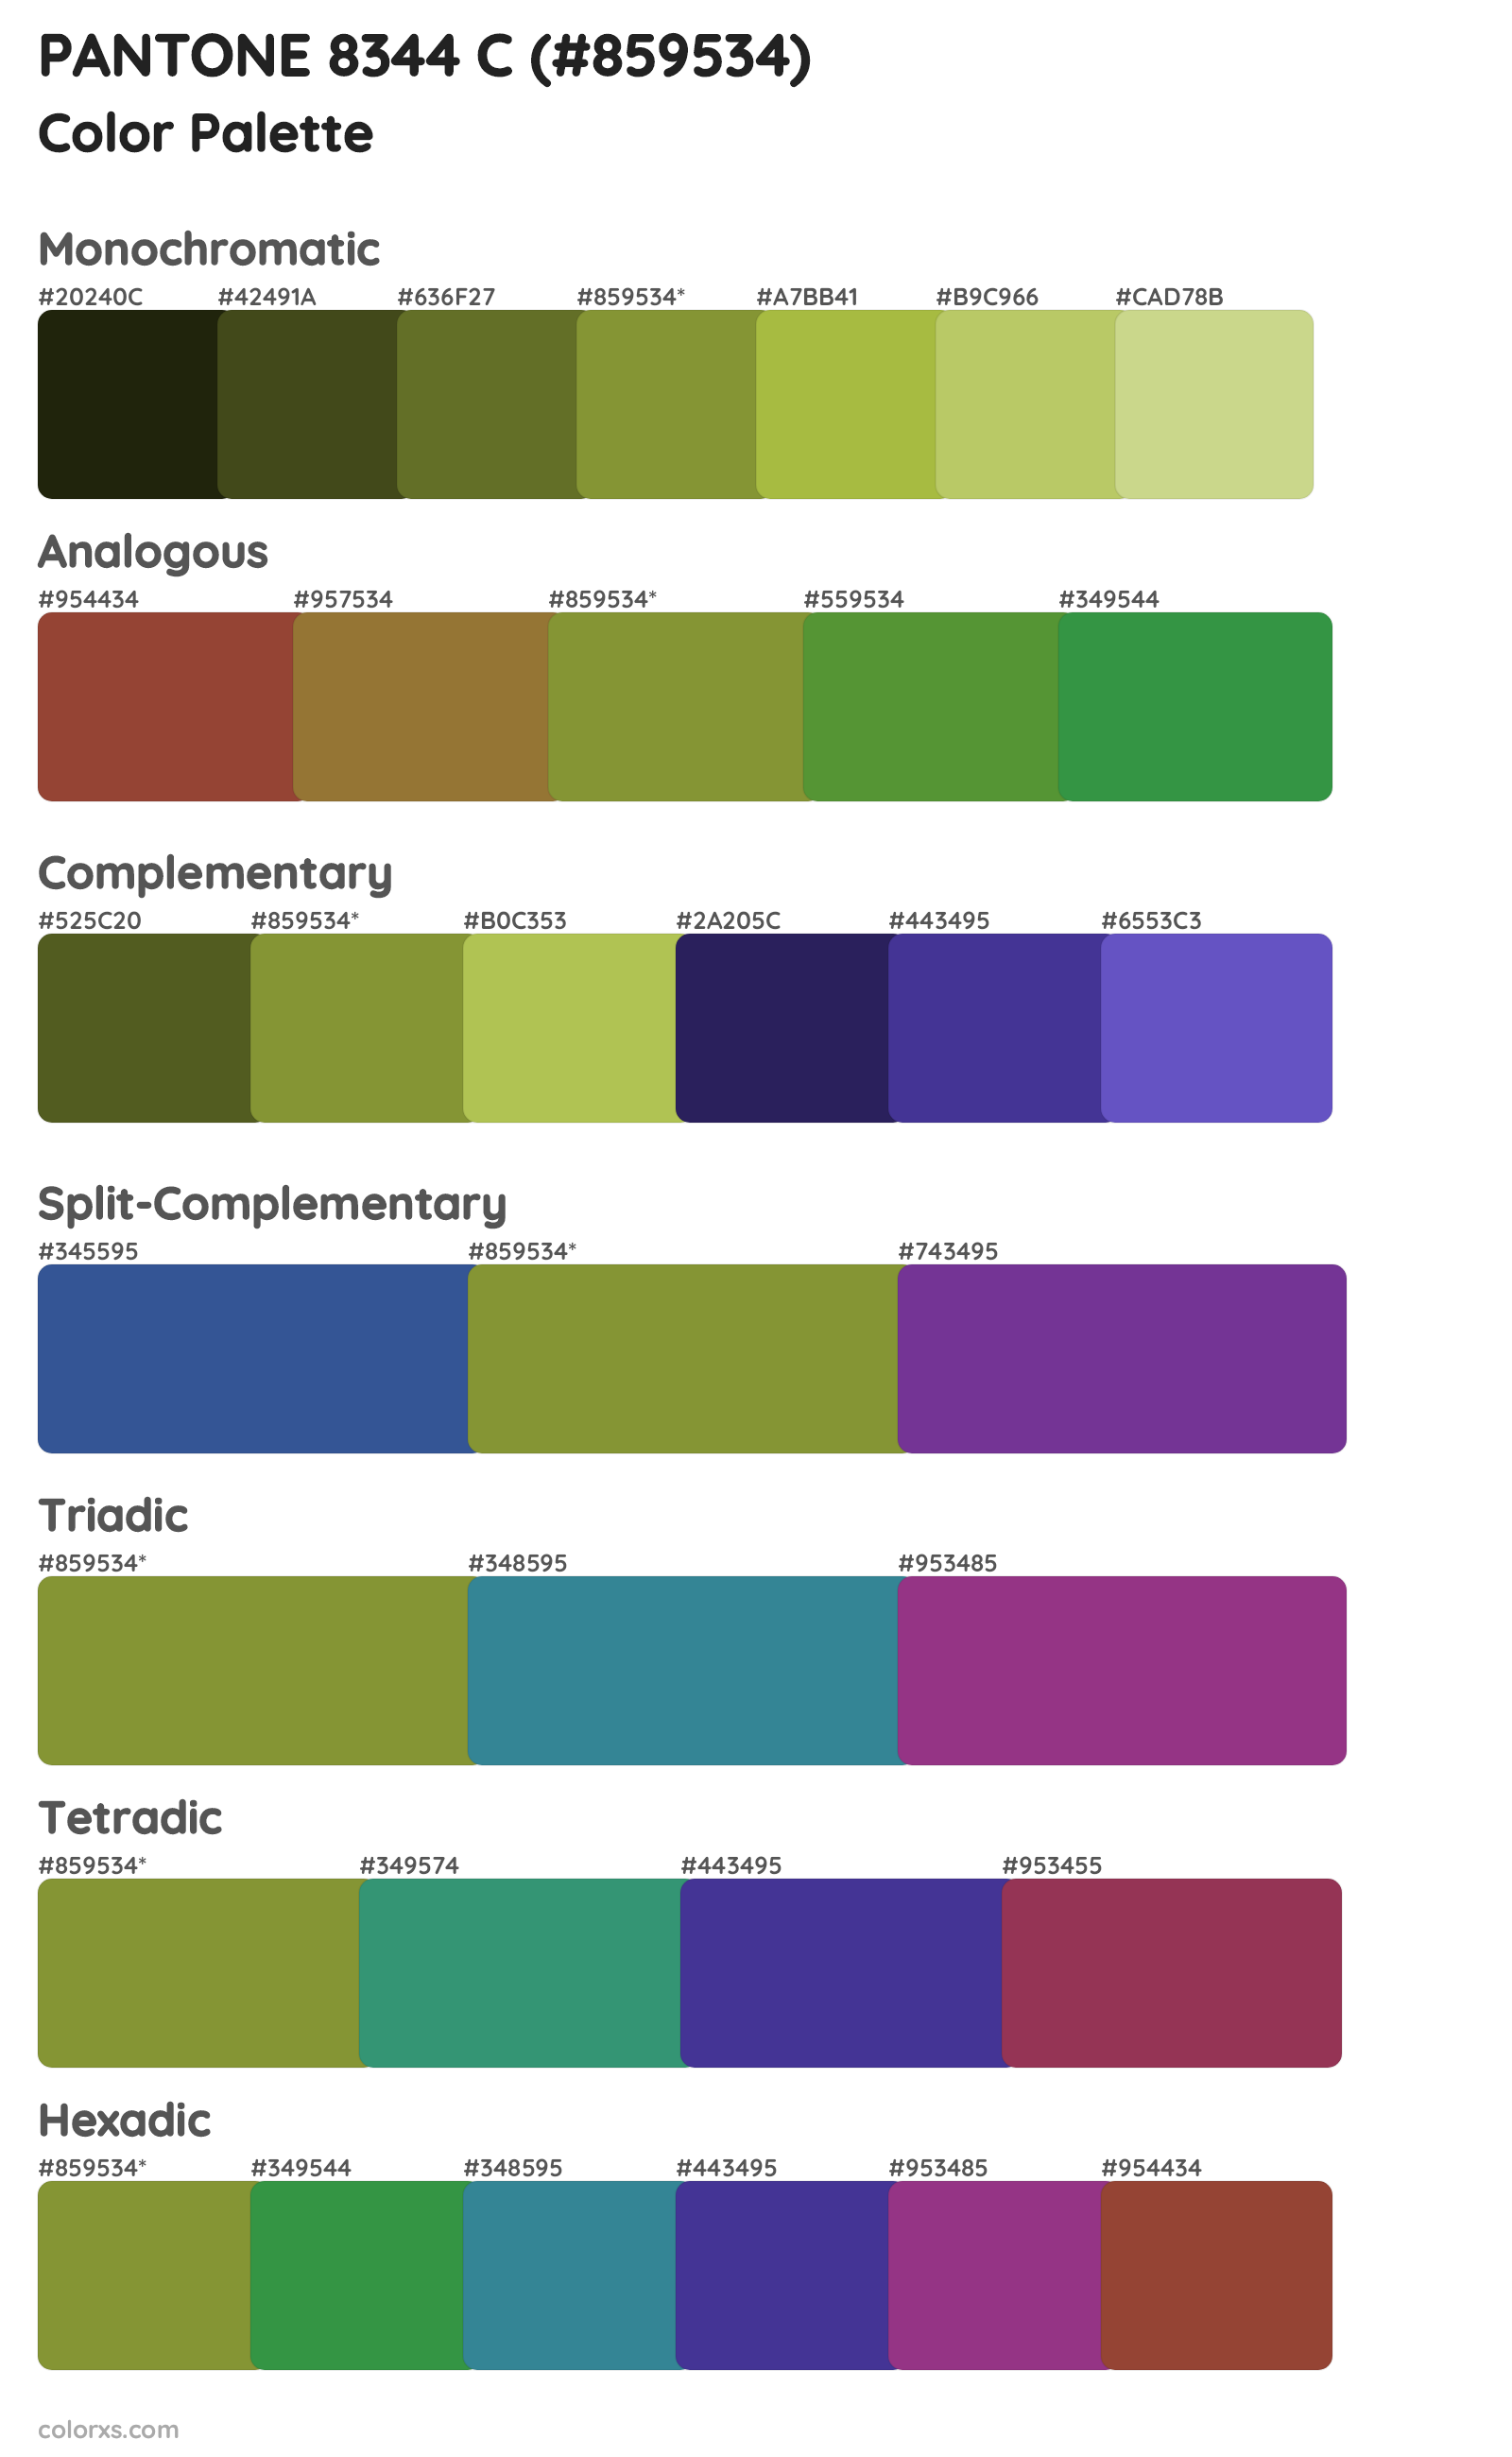 PANTONE 8344 C Color Scheme Palettes